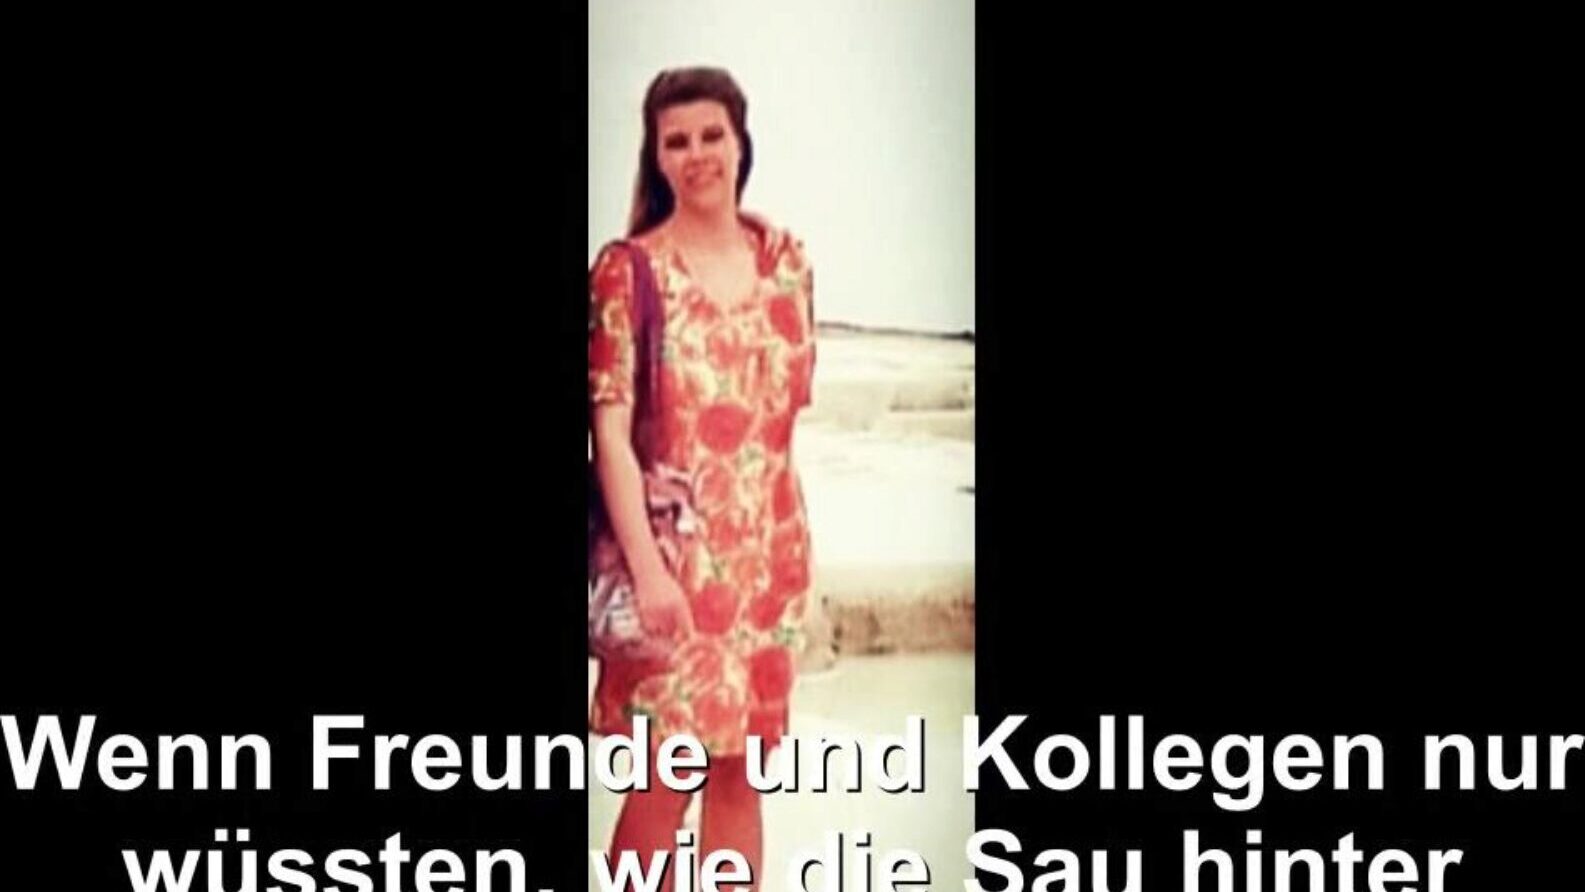 gospodină germană expusă, tub gratuit german hd porno bd vizionați gospodina germană expusă scena filmului pe xhamster, cel mai mare site de tuburi hd de dragoste cu tone de tuburi gratuite pentru toate soția germană germană și scene de film porno de casă